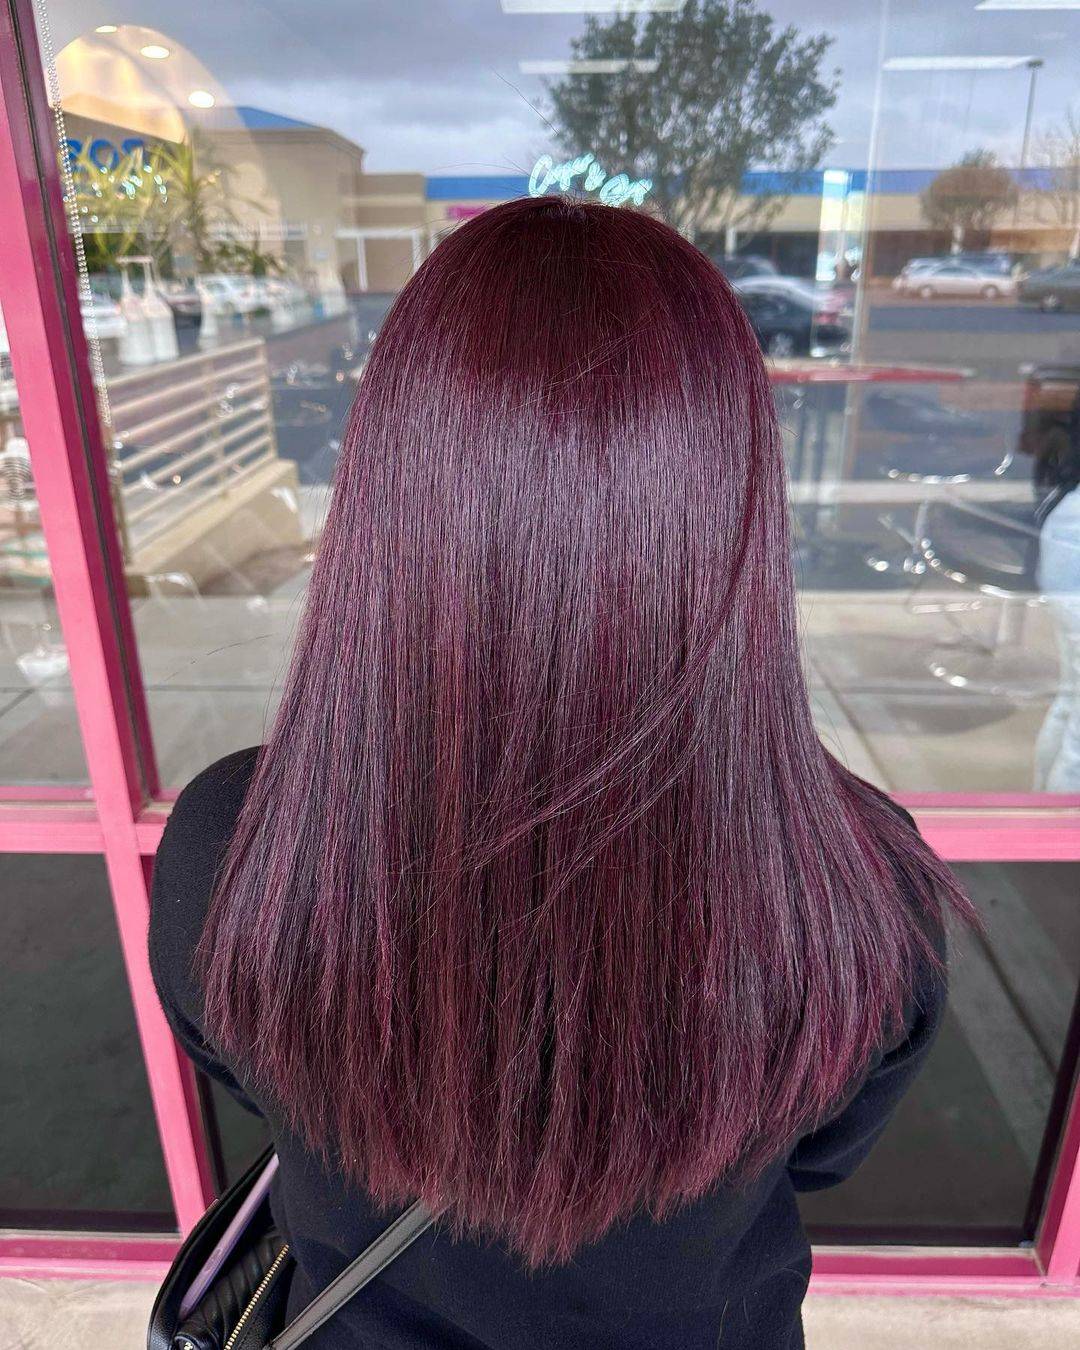 Burgundy hair color 290 burgundy hair color | burgundy hair color for women | burgundy hair color highlights Burgundy Hair Color